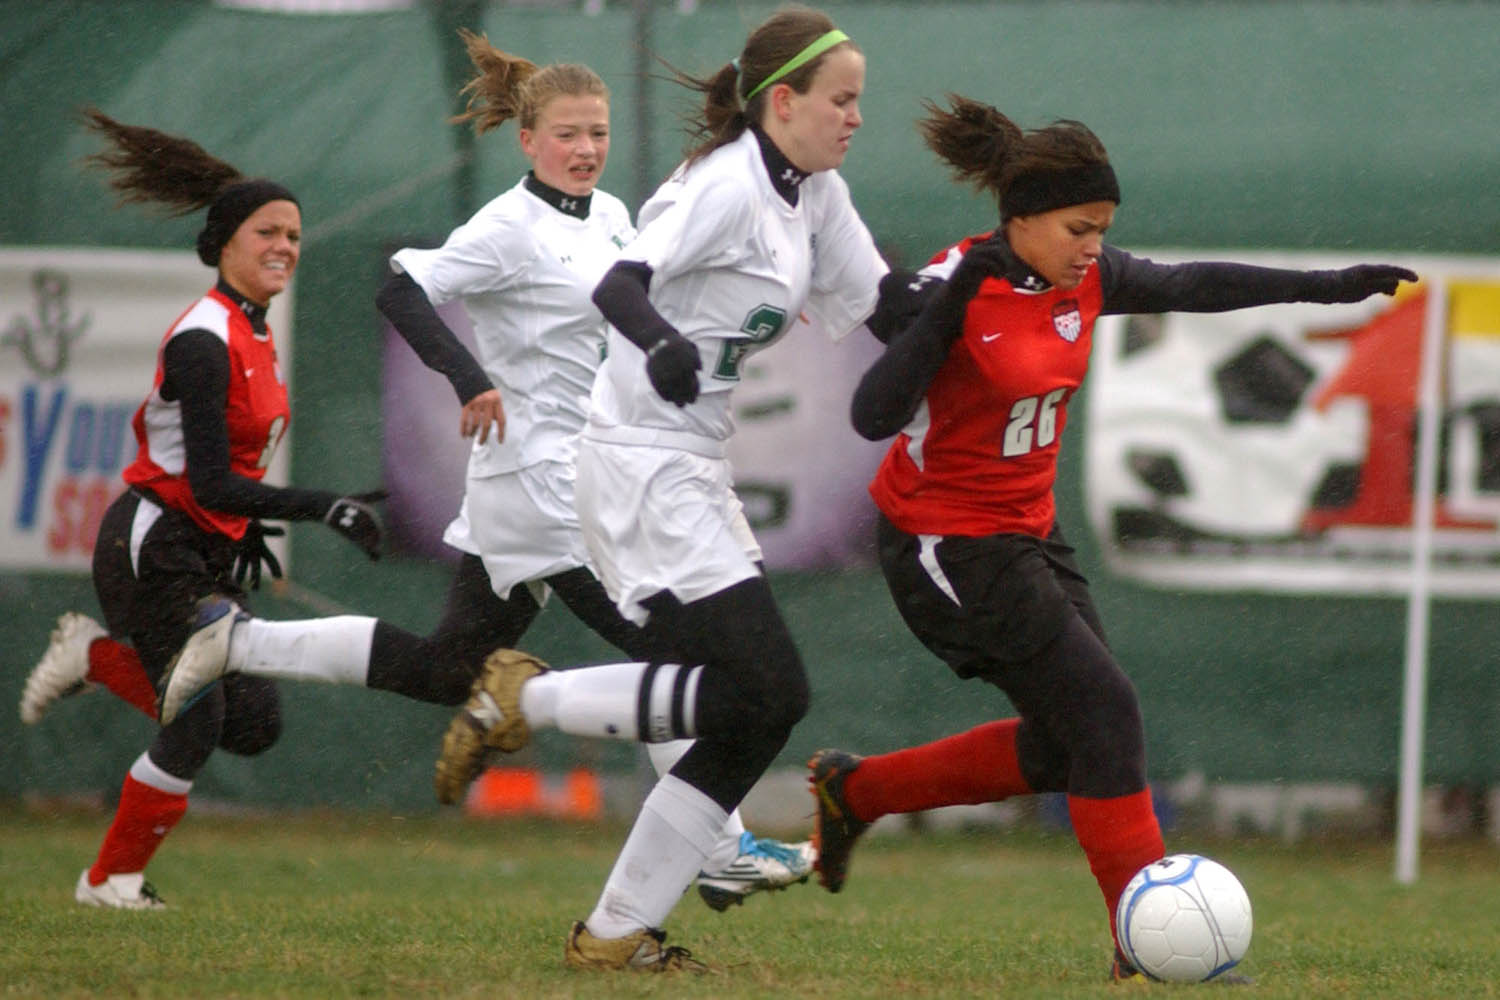 Players take part in a soccer match. (Jon C. Hancock/AP)